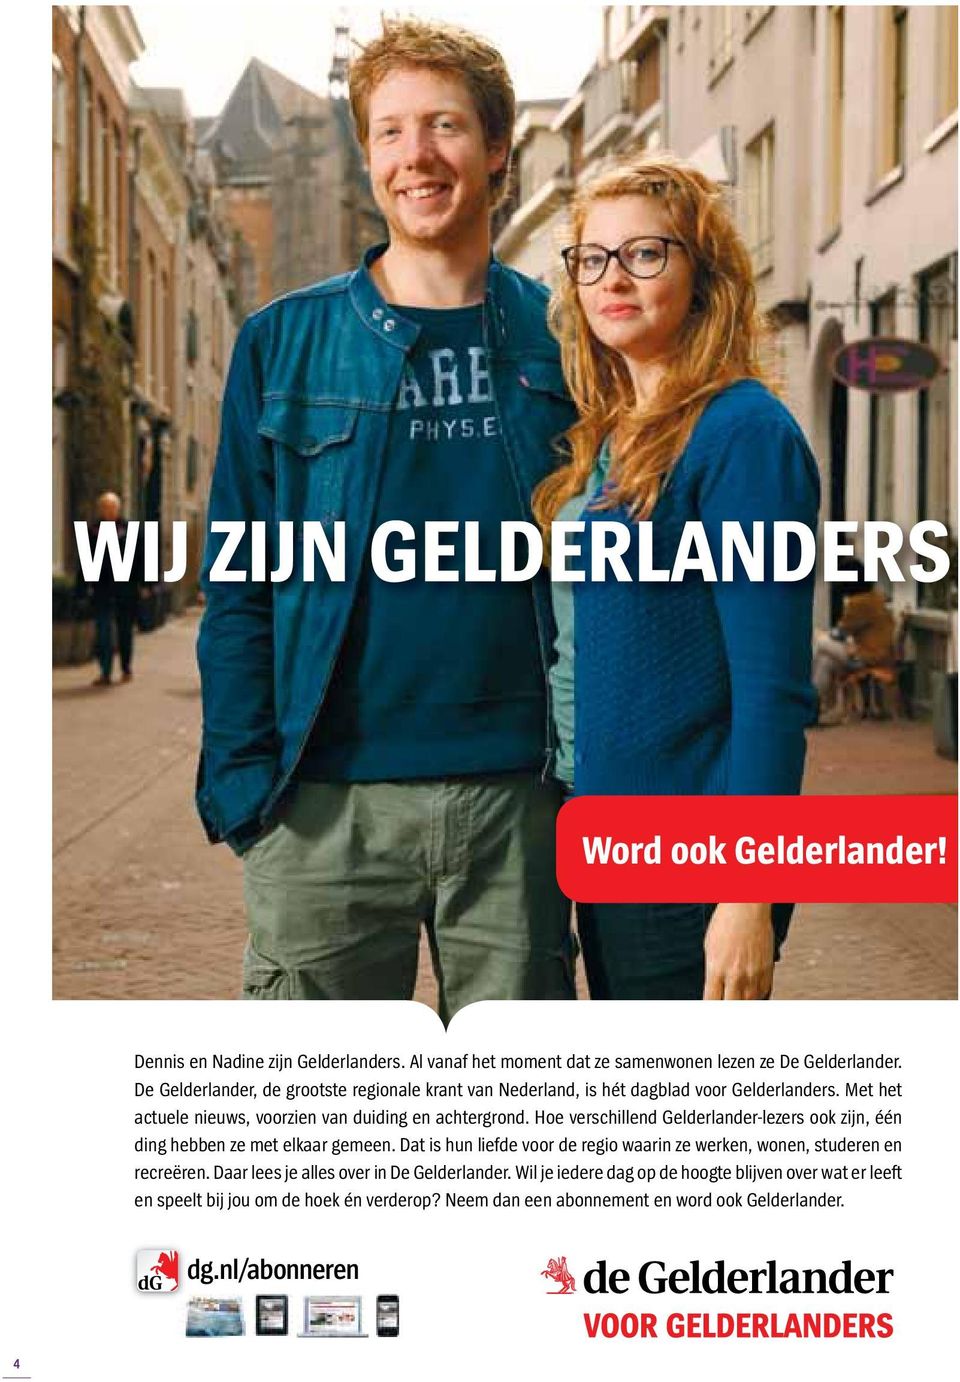 Hoe verschillend Gelderlander-lezers ook zijn, één ding hebben ze met elkaar gemeen. Dat is hun liefde voor de regio waarin ze werken, wonen, studeren en recreëren.